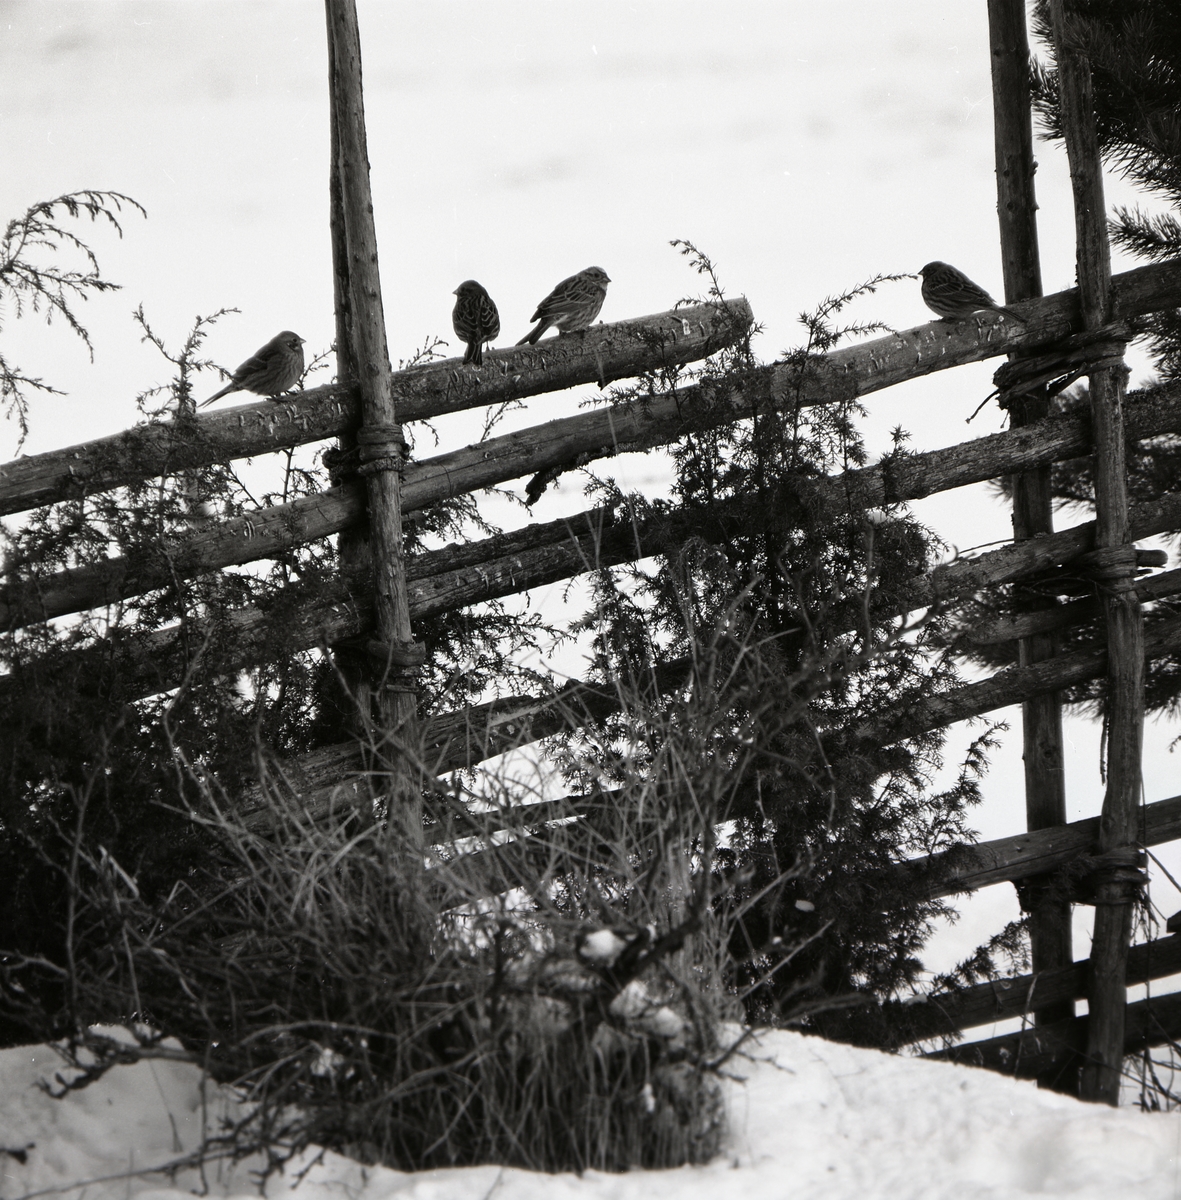 Fyra fåglar sitter på en gärdesgård i en snötäckt hage, vårvintern 1971. Intill gärdesgården växer några enbuskar.